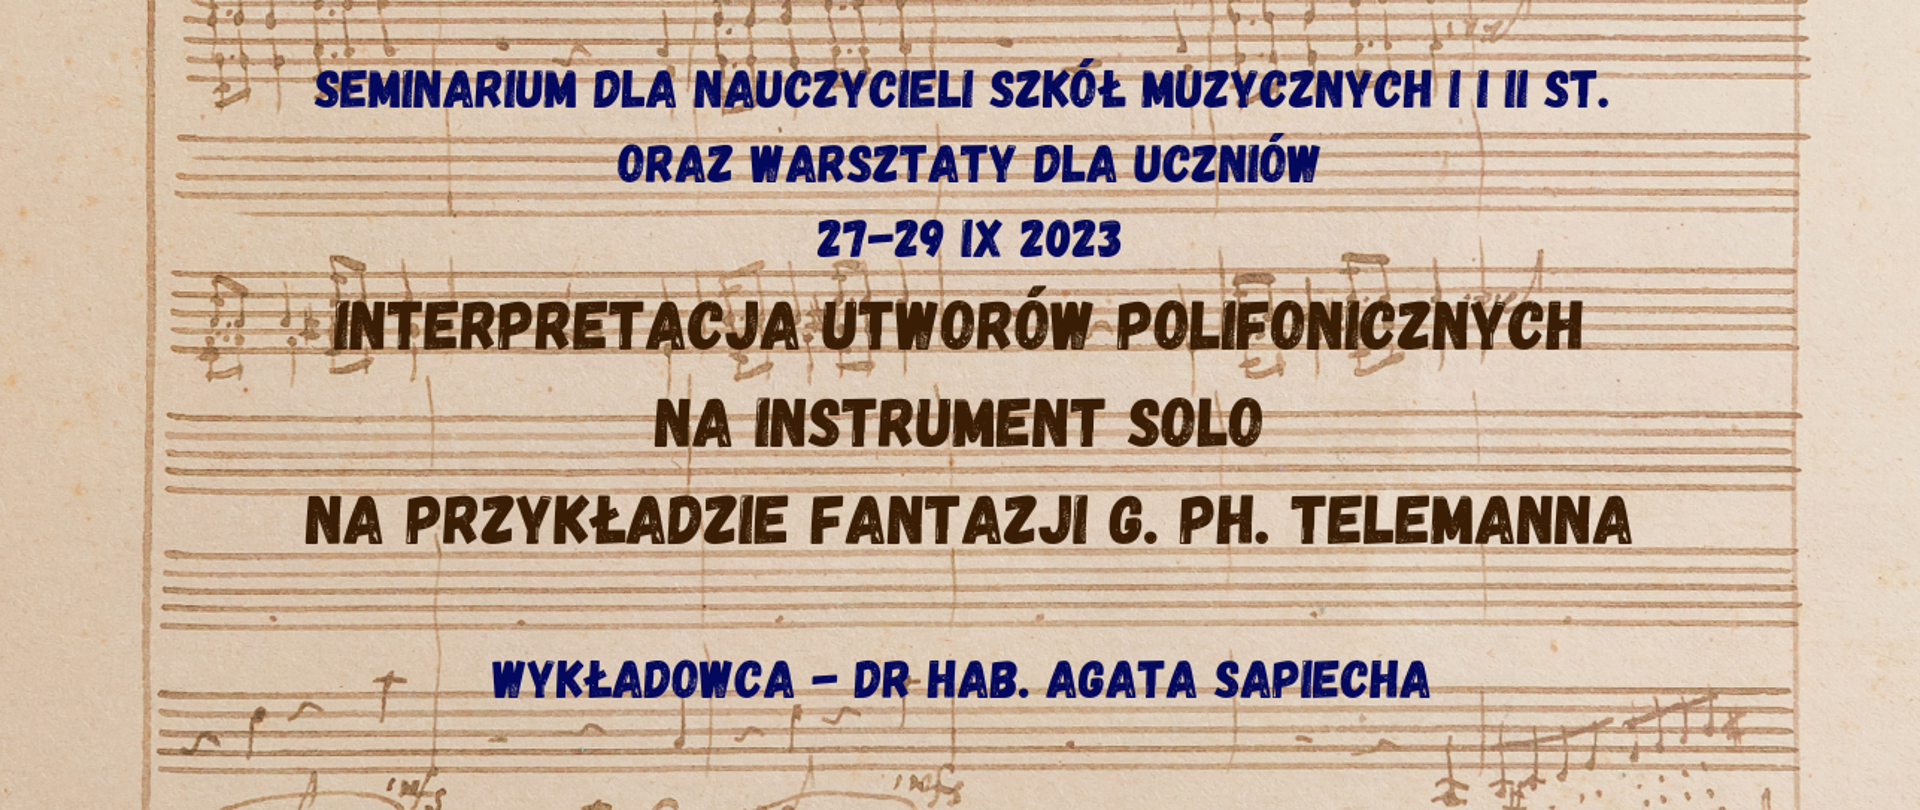 Baner na Seminarium prof. Agaty Sapiechy 27-29 IX 2023 pt. Interpretacja utworów polifonicznych na instrument solo, napis na grafice z nutami